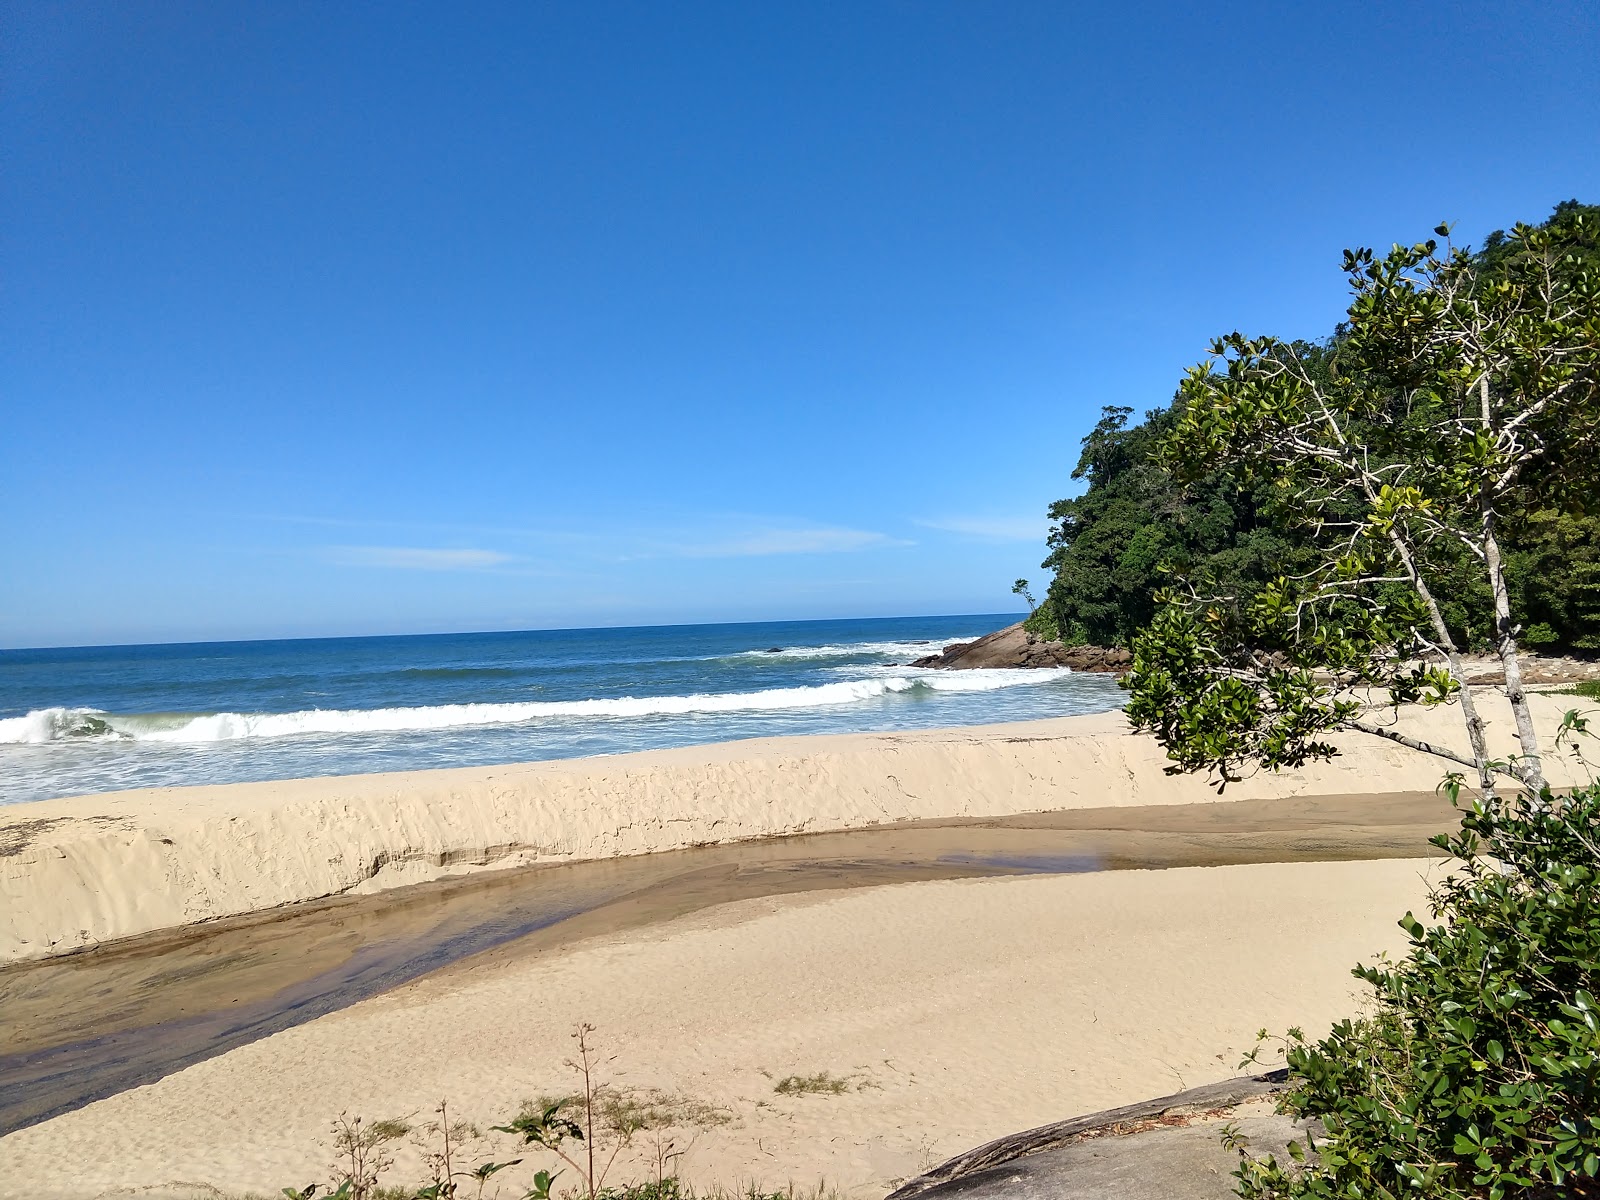 Fotografie cu Praia da Meia Lua amplasat într-o zonă naturală